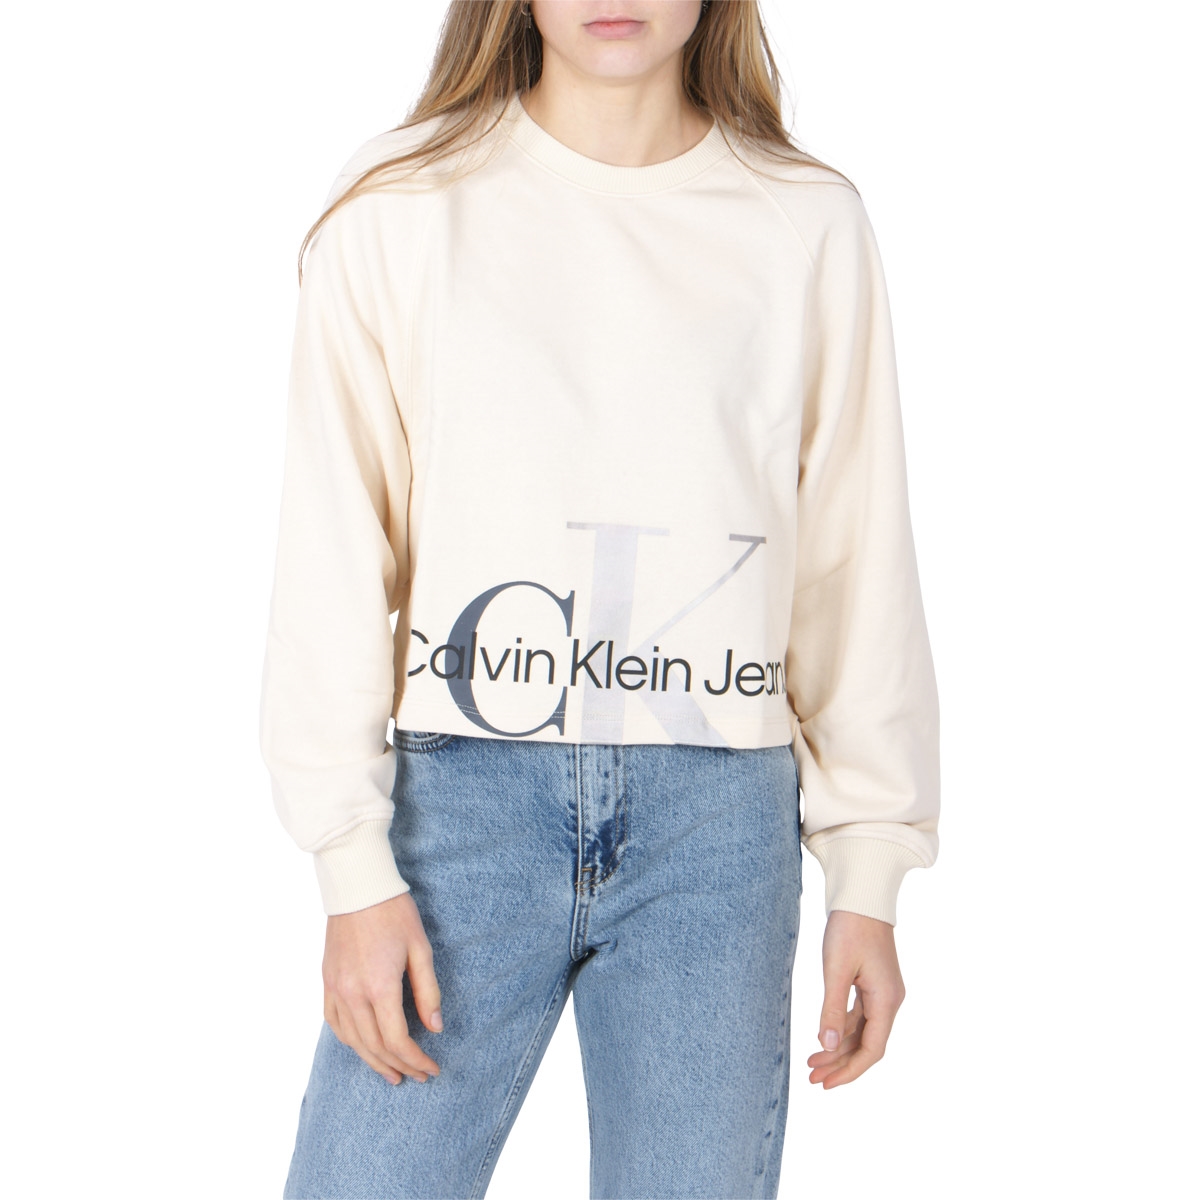 Calvin Klein Girls T-shirt Mixed Monogram Cutoff 1277 Muslin